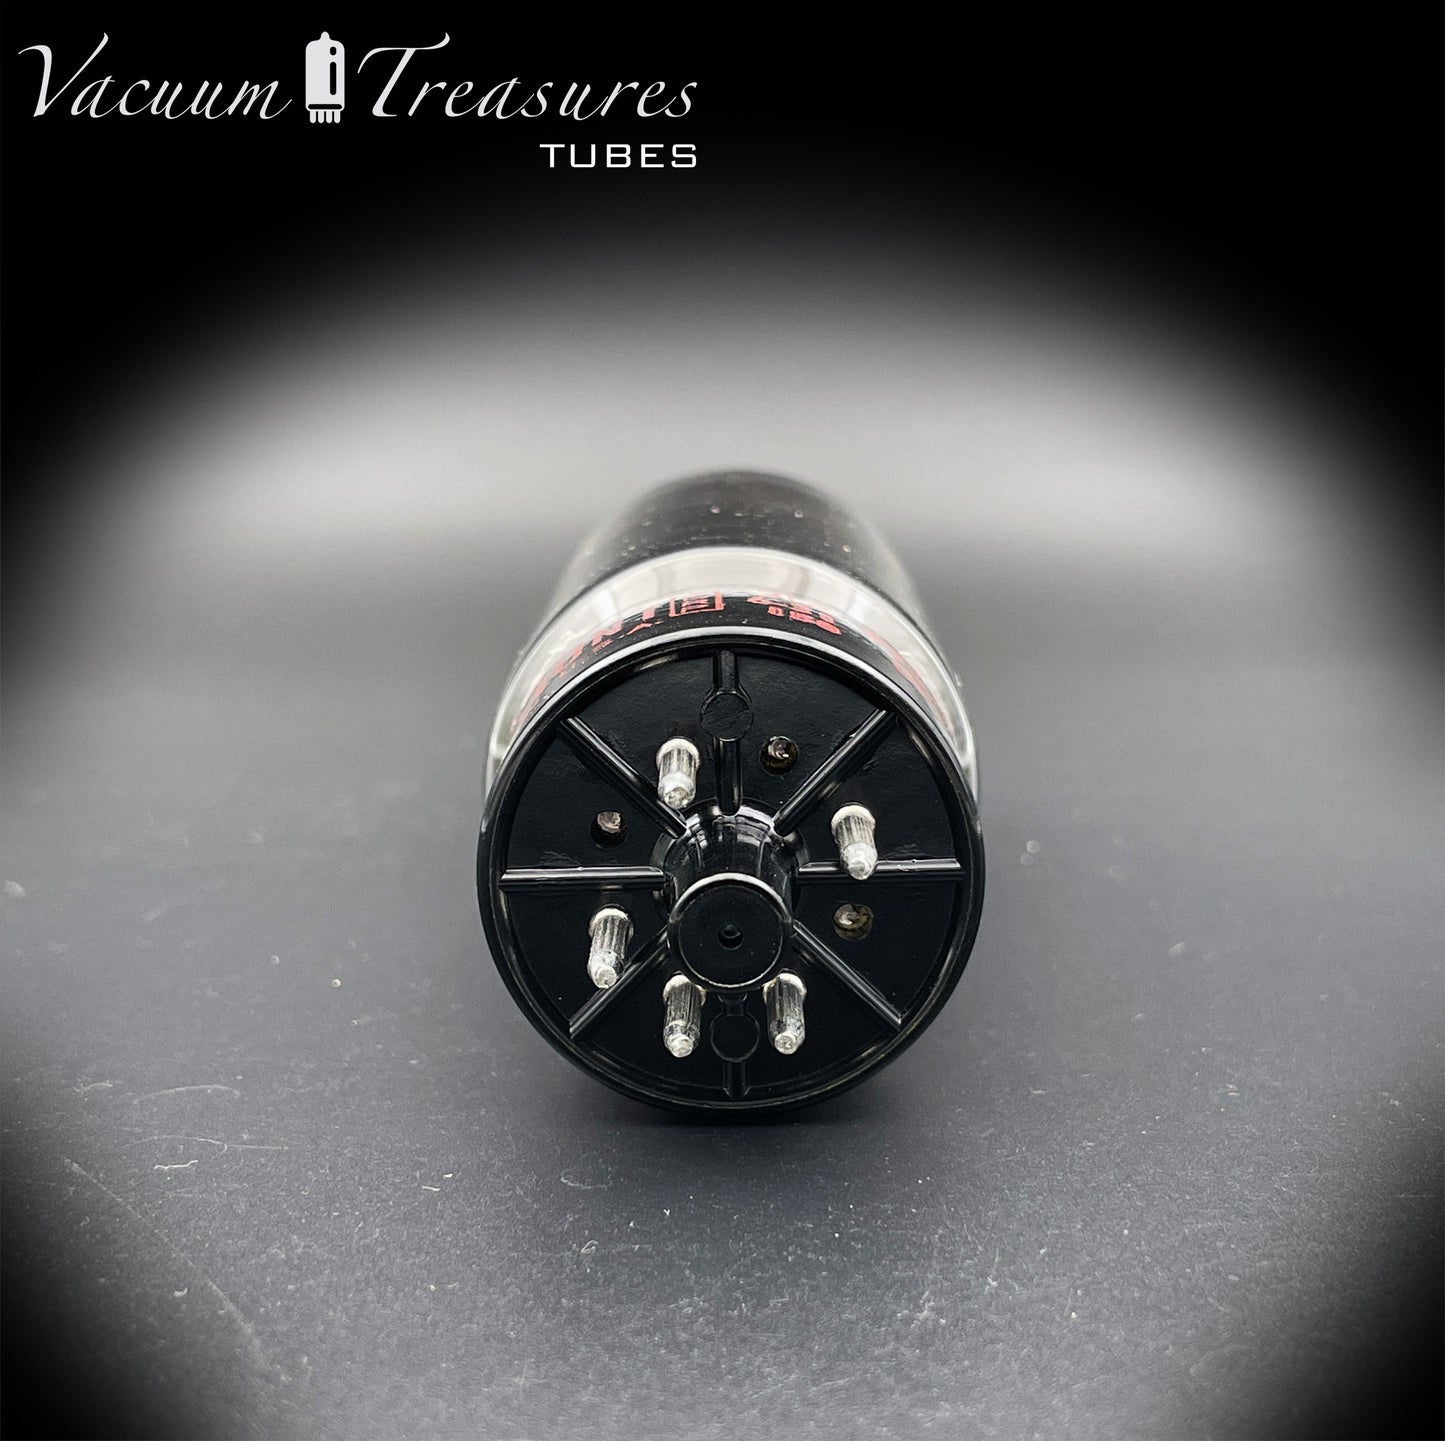 5V3 (5AU4) DUMONT NOS NIB Black Plates OO Getter-getesteter Röhrengleichrichter, hergestellt in den USA